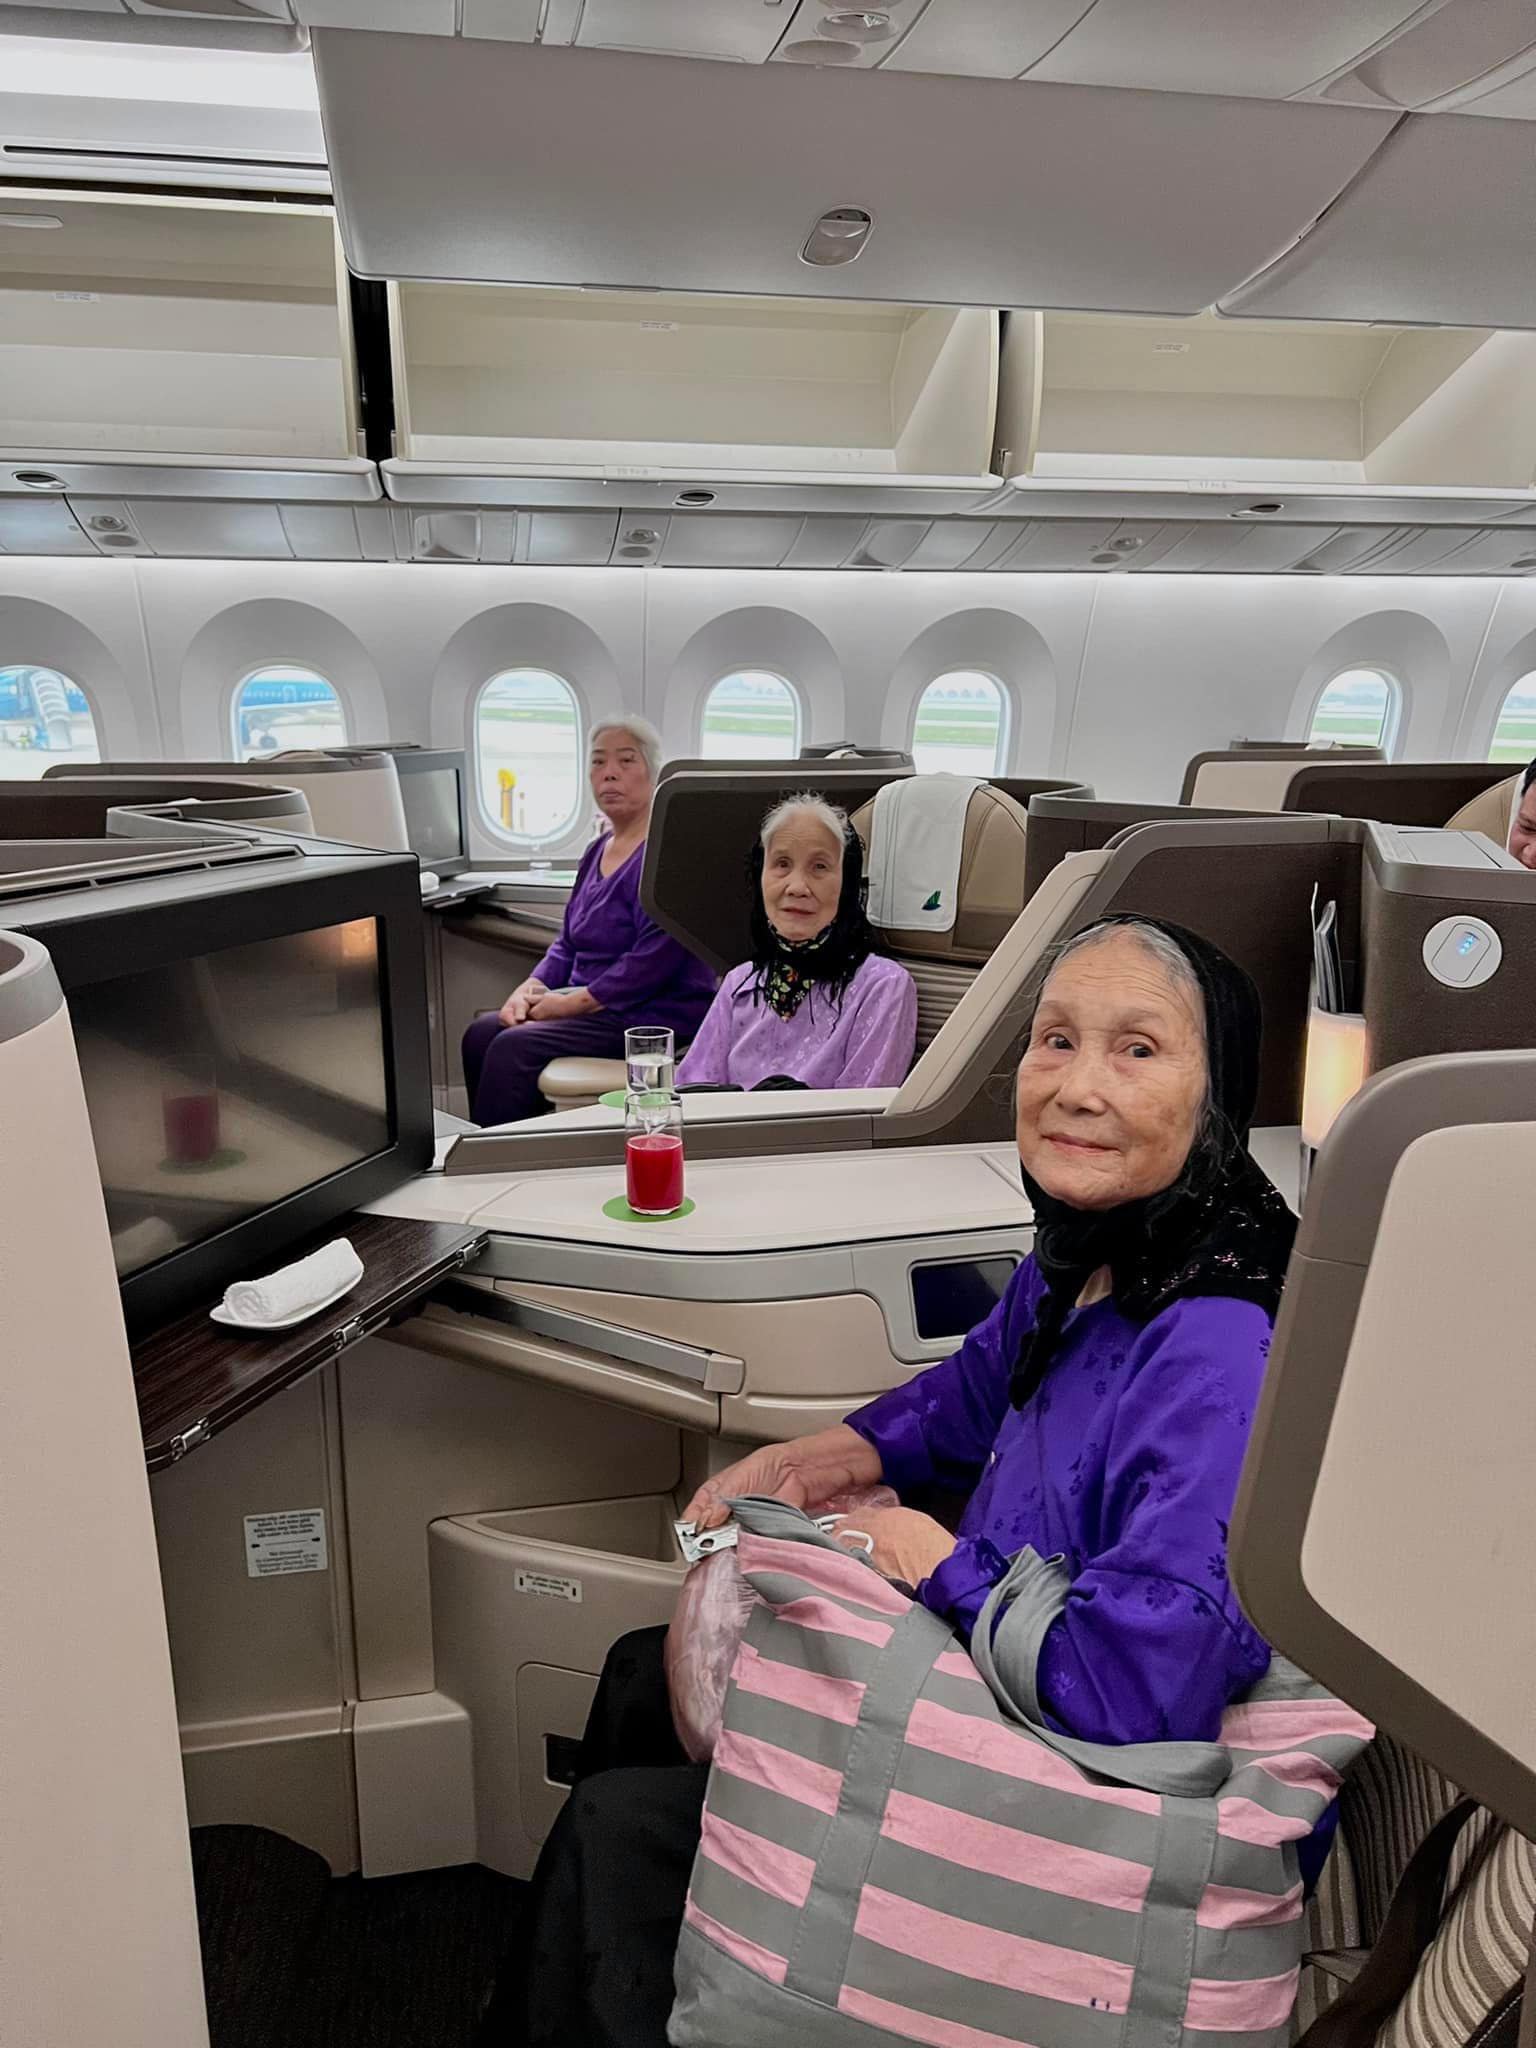 Sự thật hình ảnh 3 bà cụ ngồi khoang thương gia máy bay, là bà của nữ diễn đình đám VTV đã 102 tuổi - ảnh 1